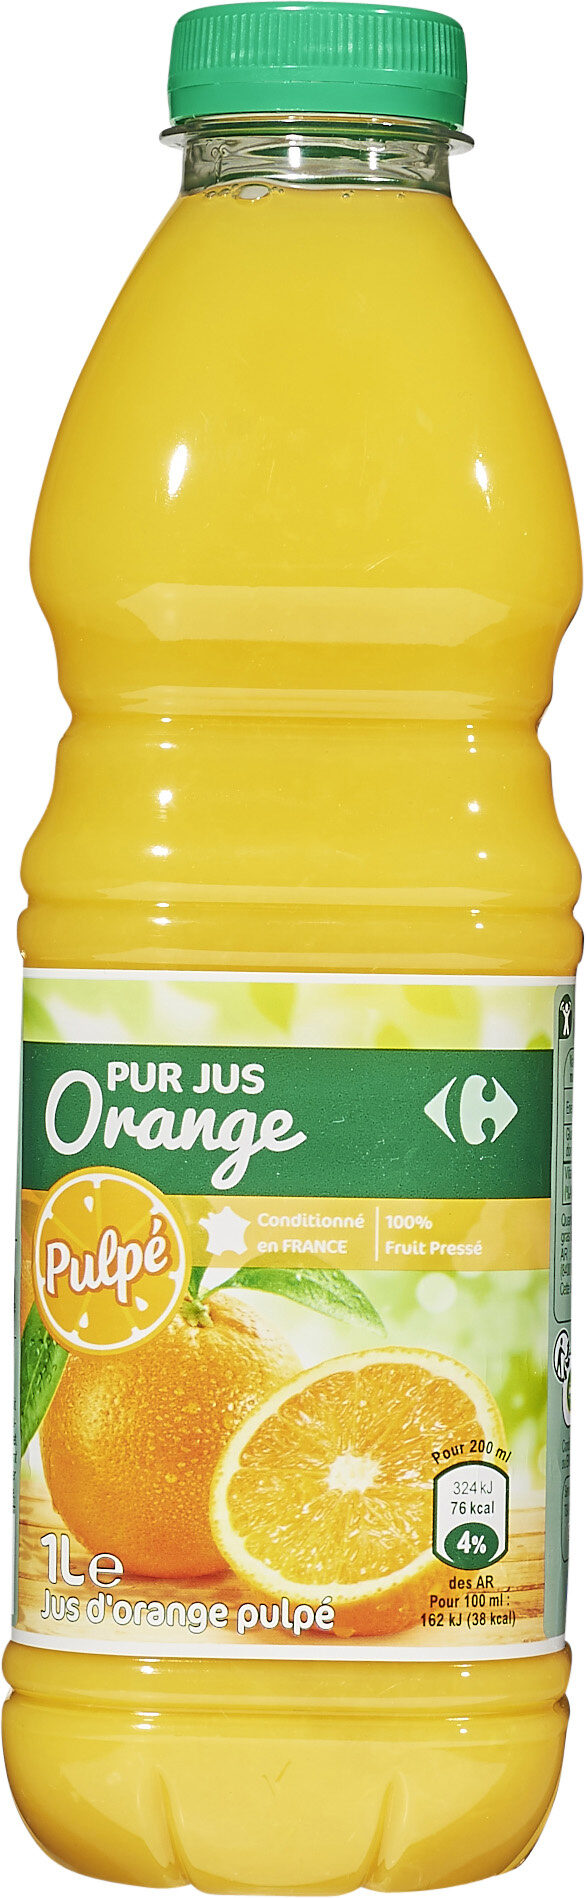 100% pur jus jus d'orange avec pulpe - Prodotto - fr